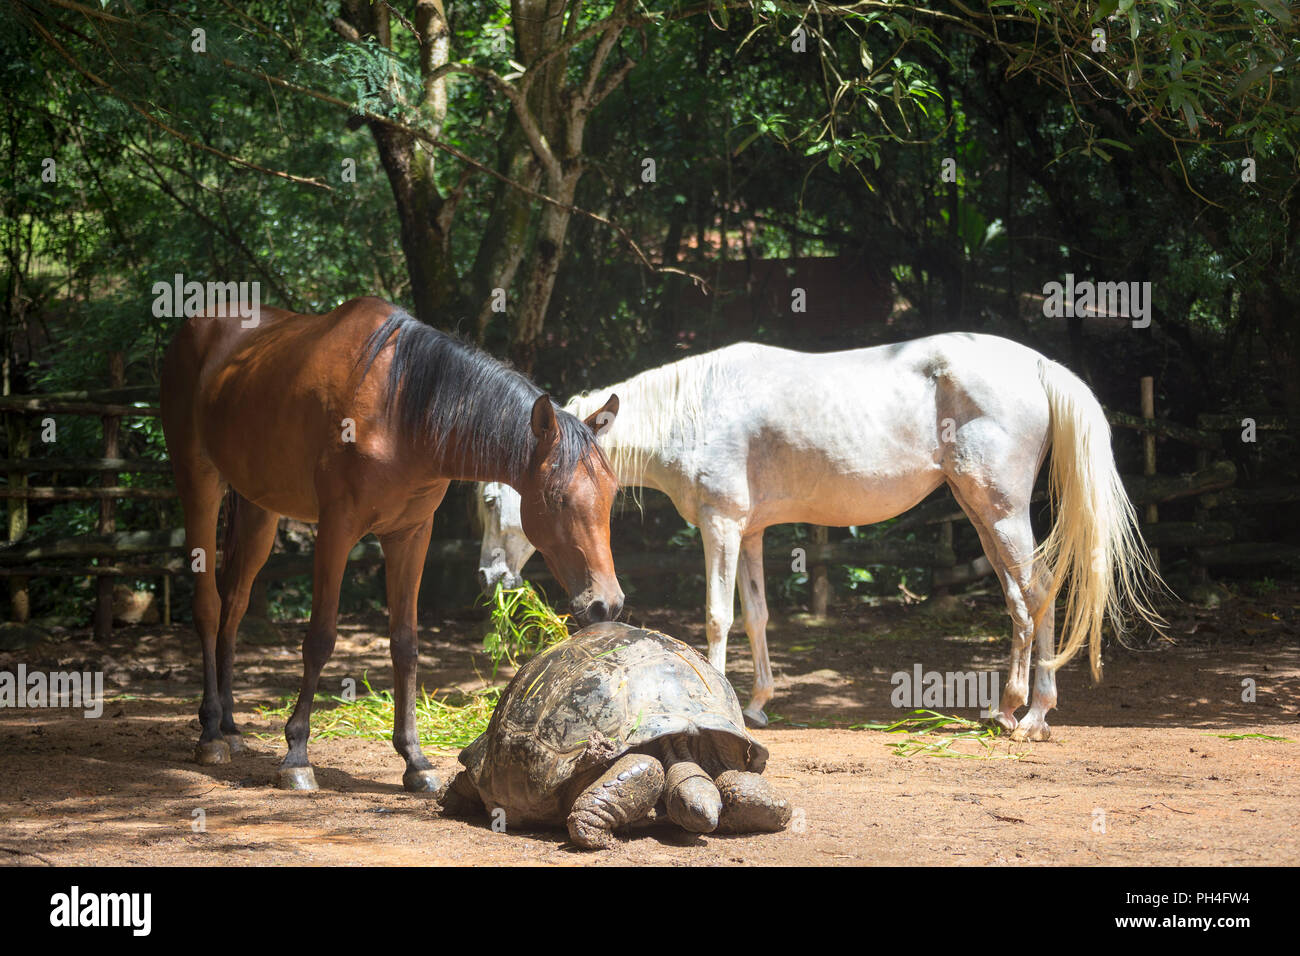 Cheval Arabe. Deux chevaux d'une tortue géante des Seychelles réunion dans un enclos. Seychelles Banque D'Images